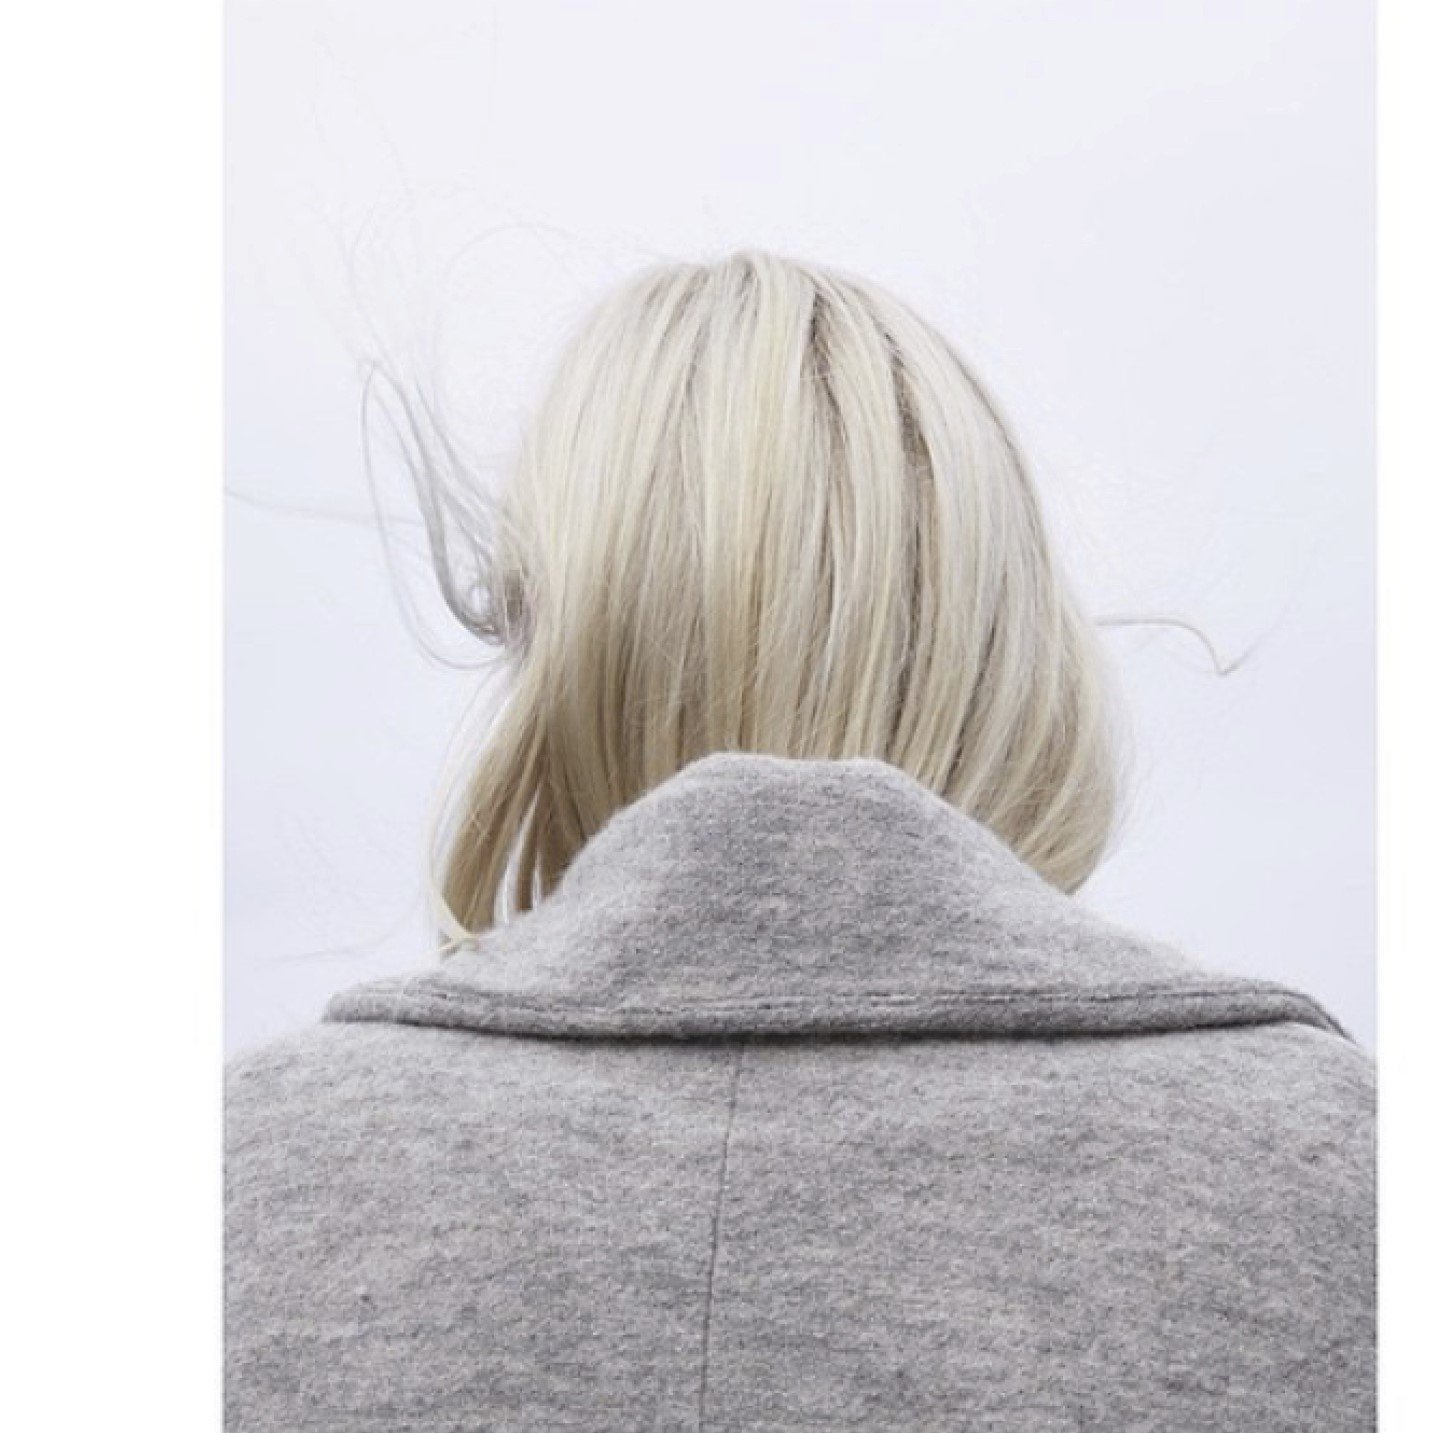 Platinablont hår instoppat i en grå kappa